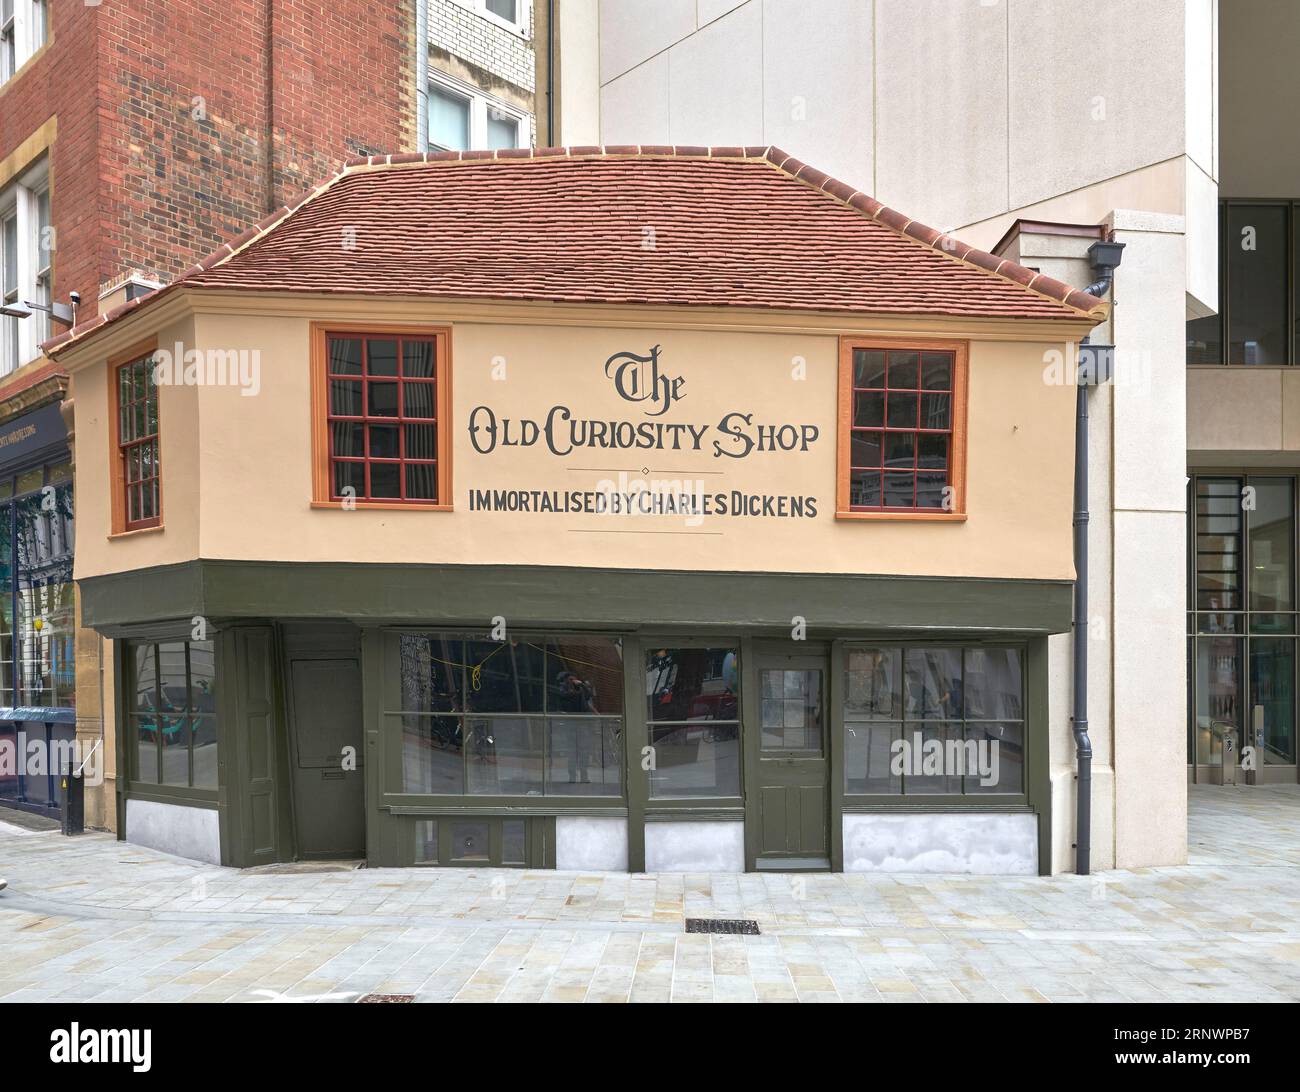 Vieux magasin de curiosité charles dickens londres Banque D'Images